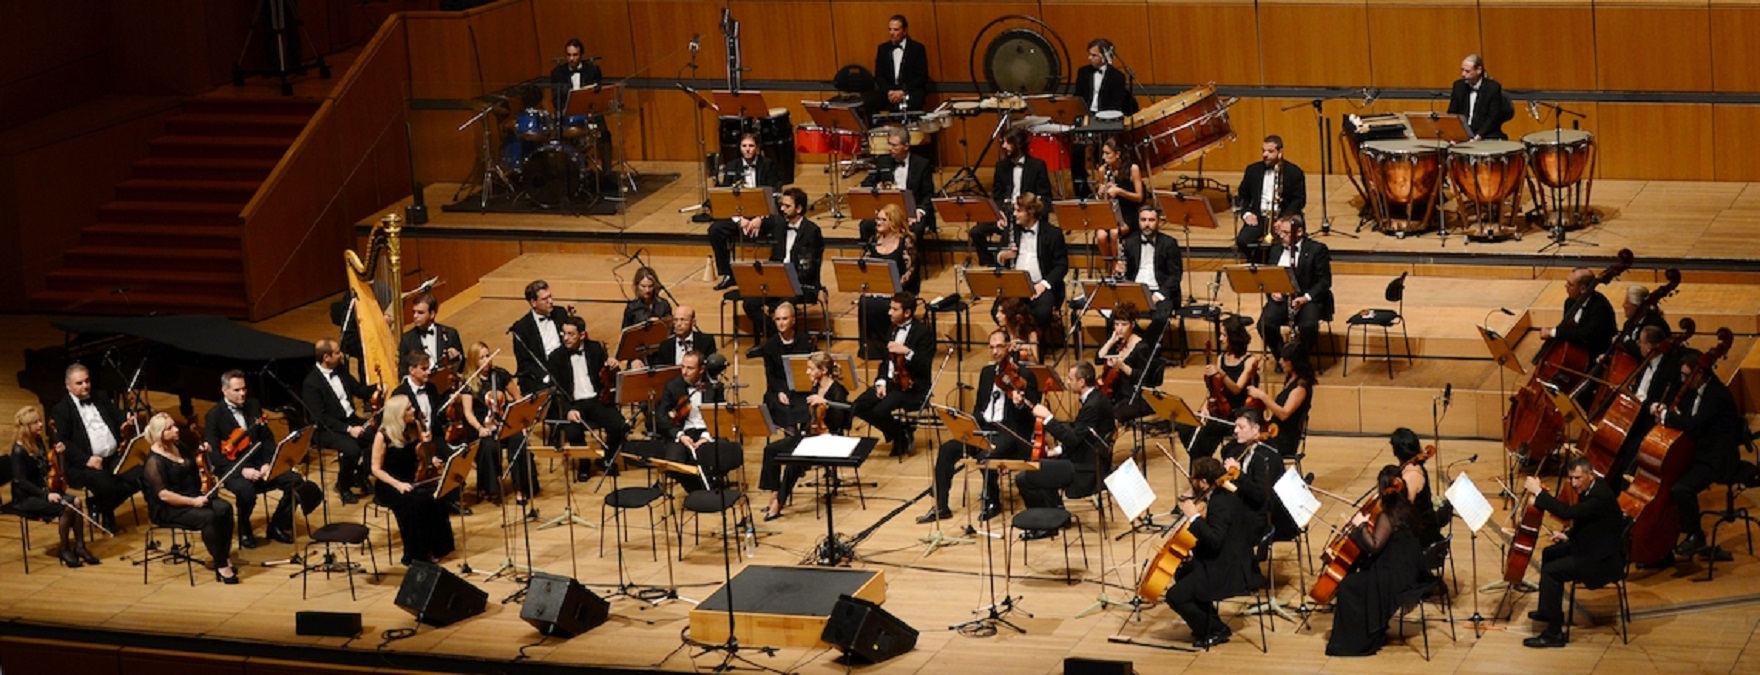 Συναυλία Εθνικής Συμφωνικής Ορχήστρας ΕΡ